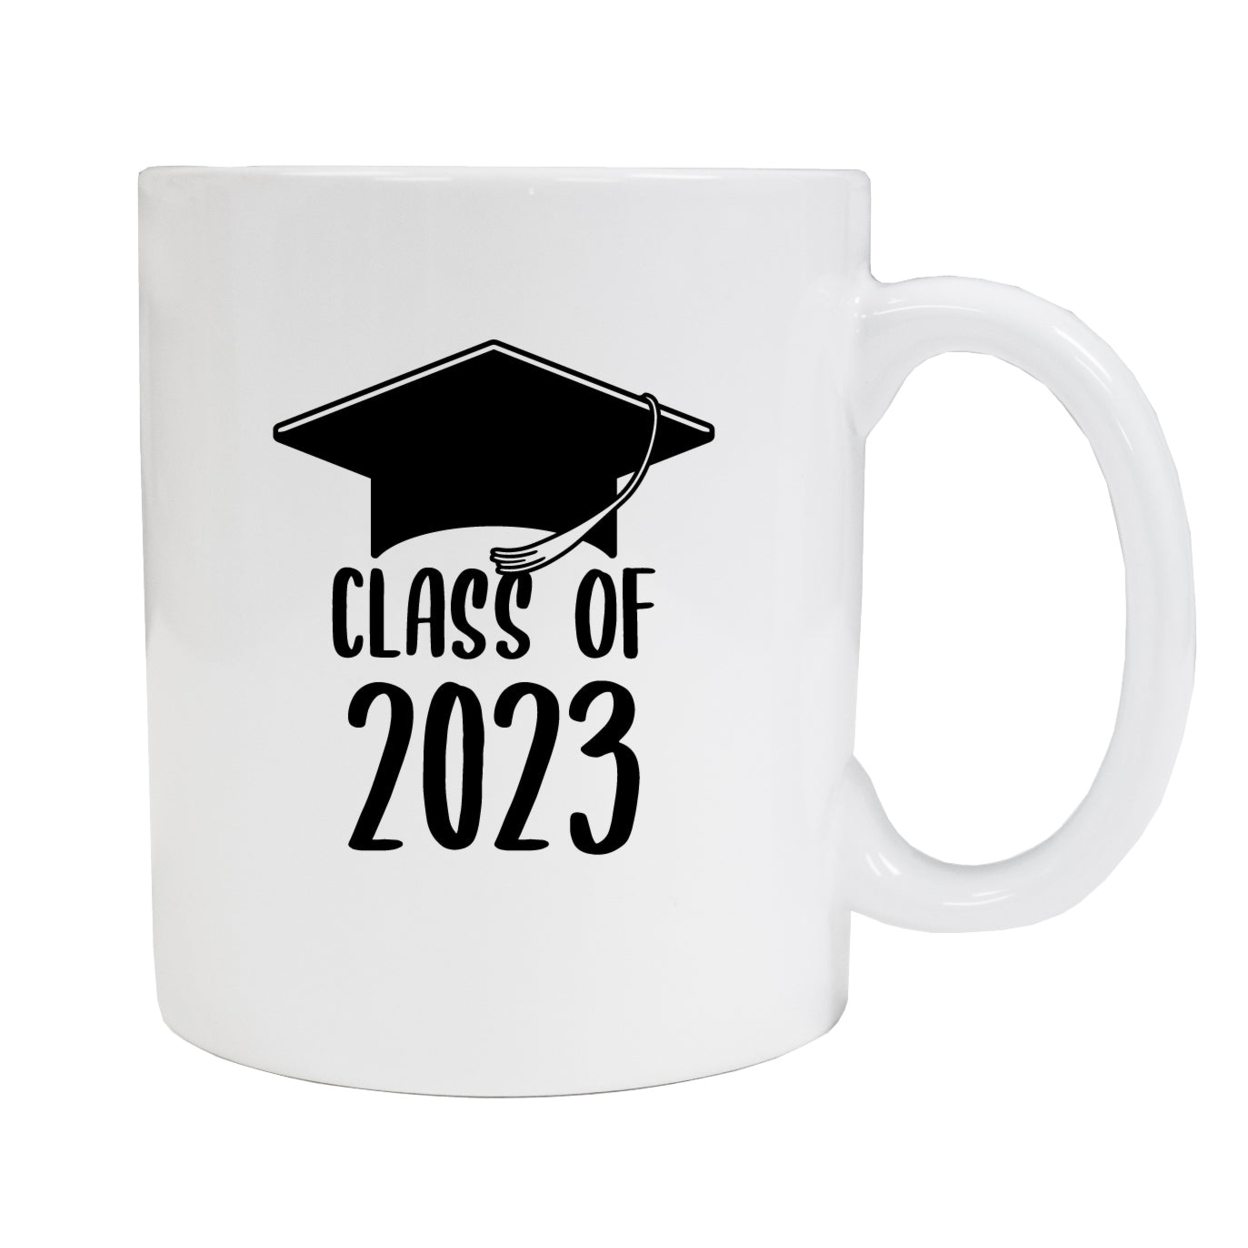 Class Of 2023 Graduation 12 Oz Ceramic Coffee Mug - Black/A, 2-Pack